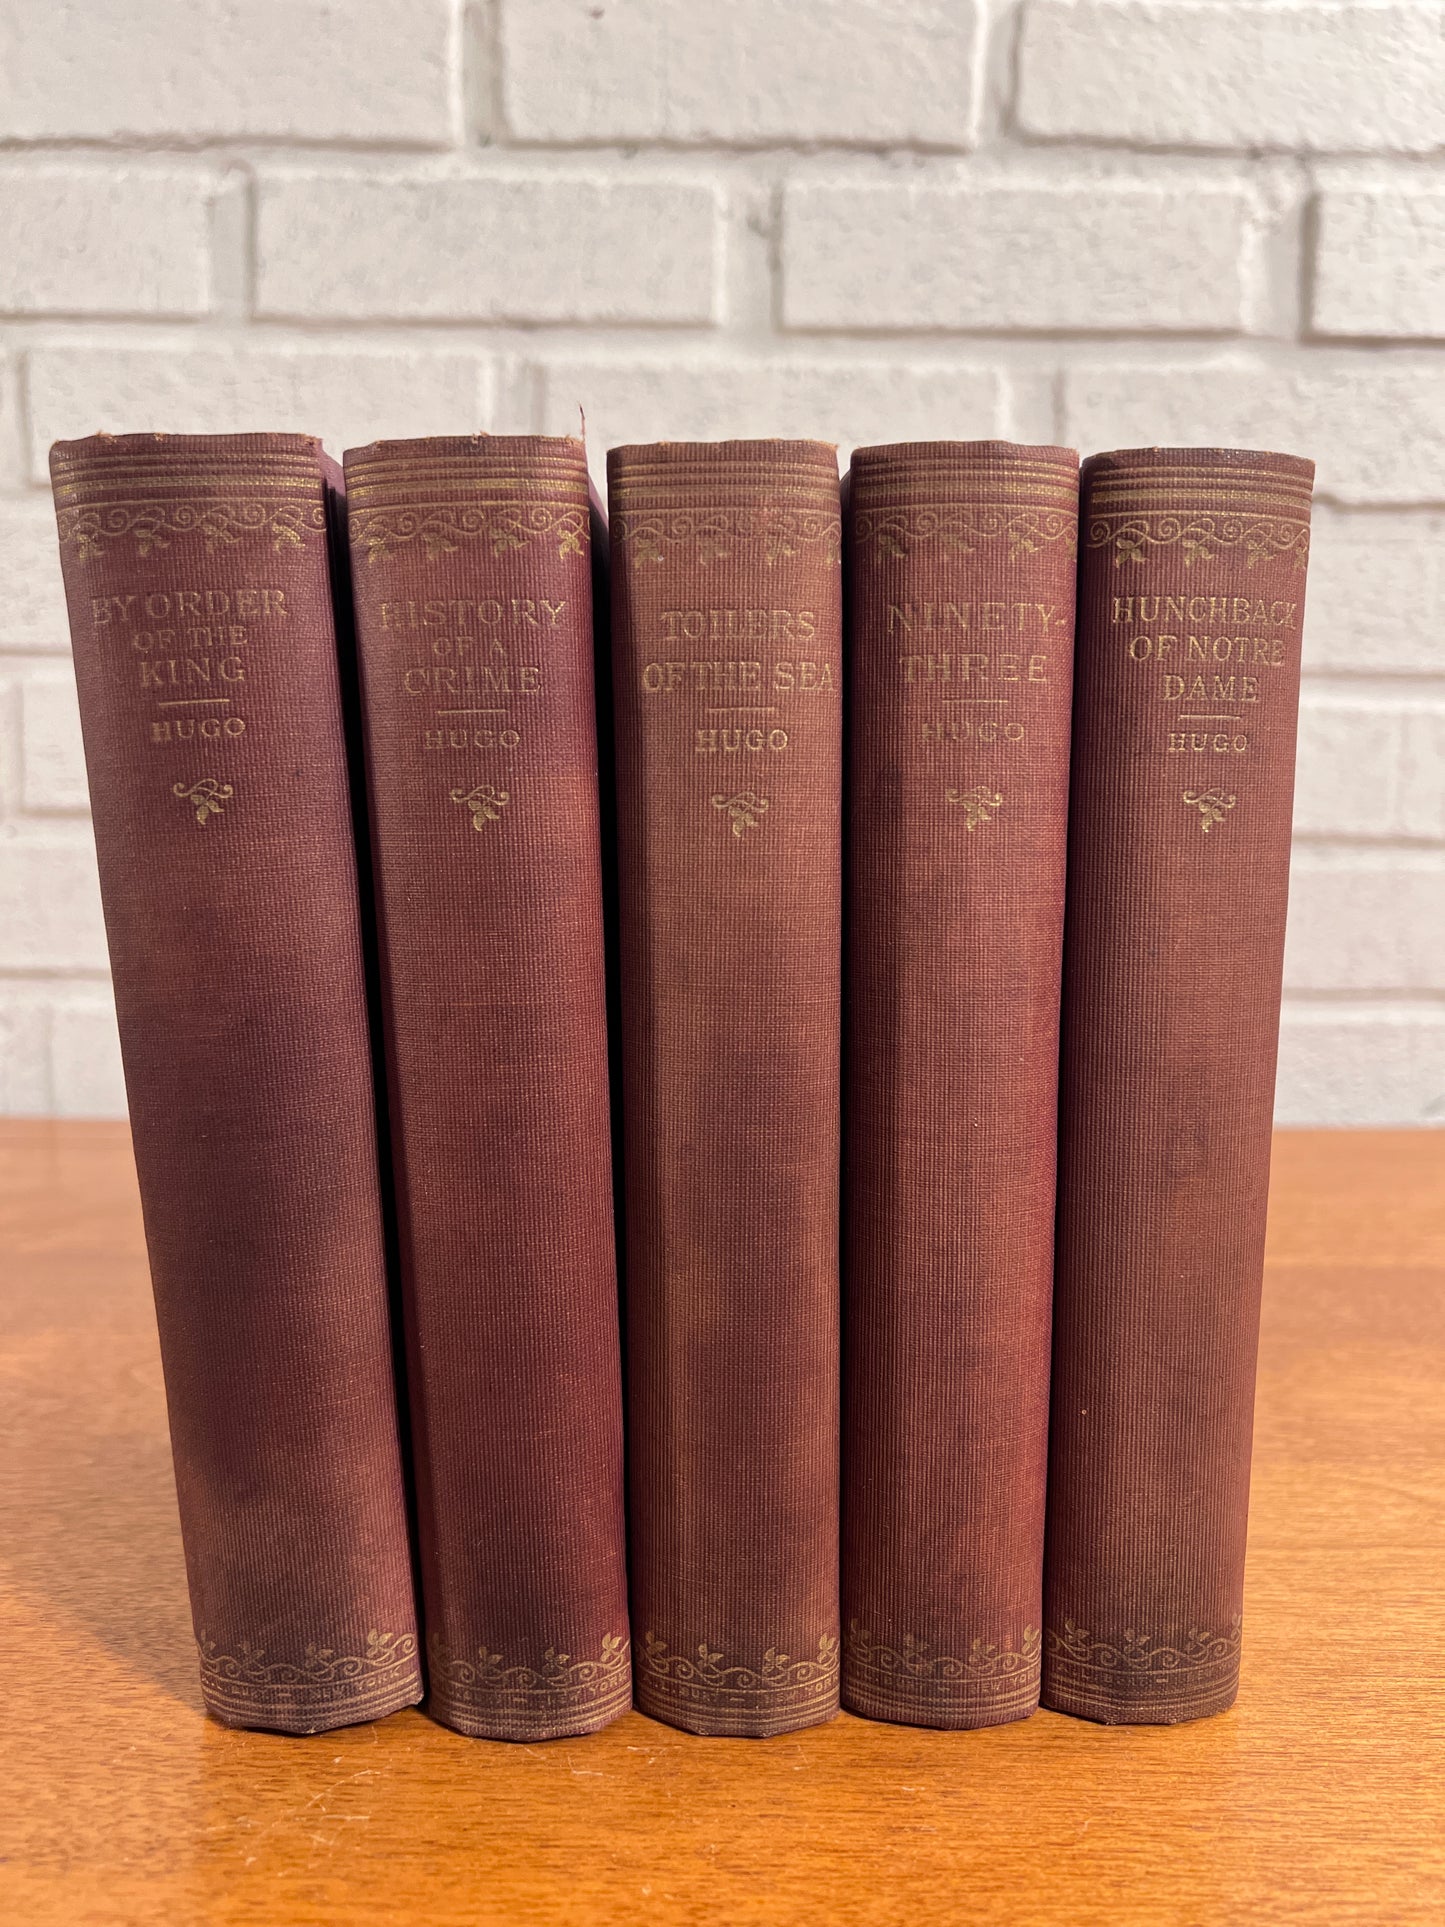 Works of Victor Hugo [5 Book Set, A.L. Burt Publishers]